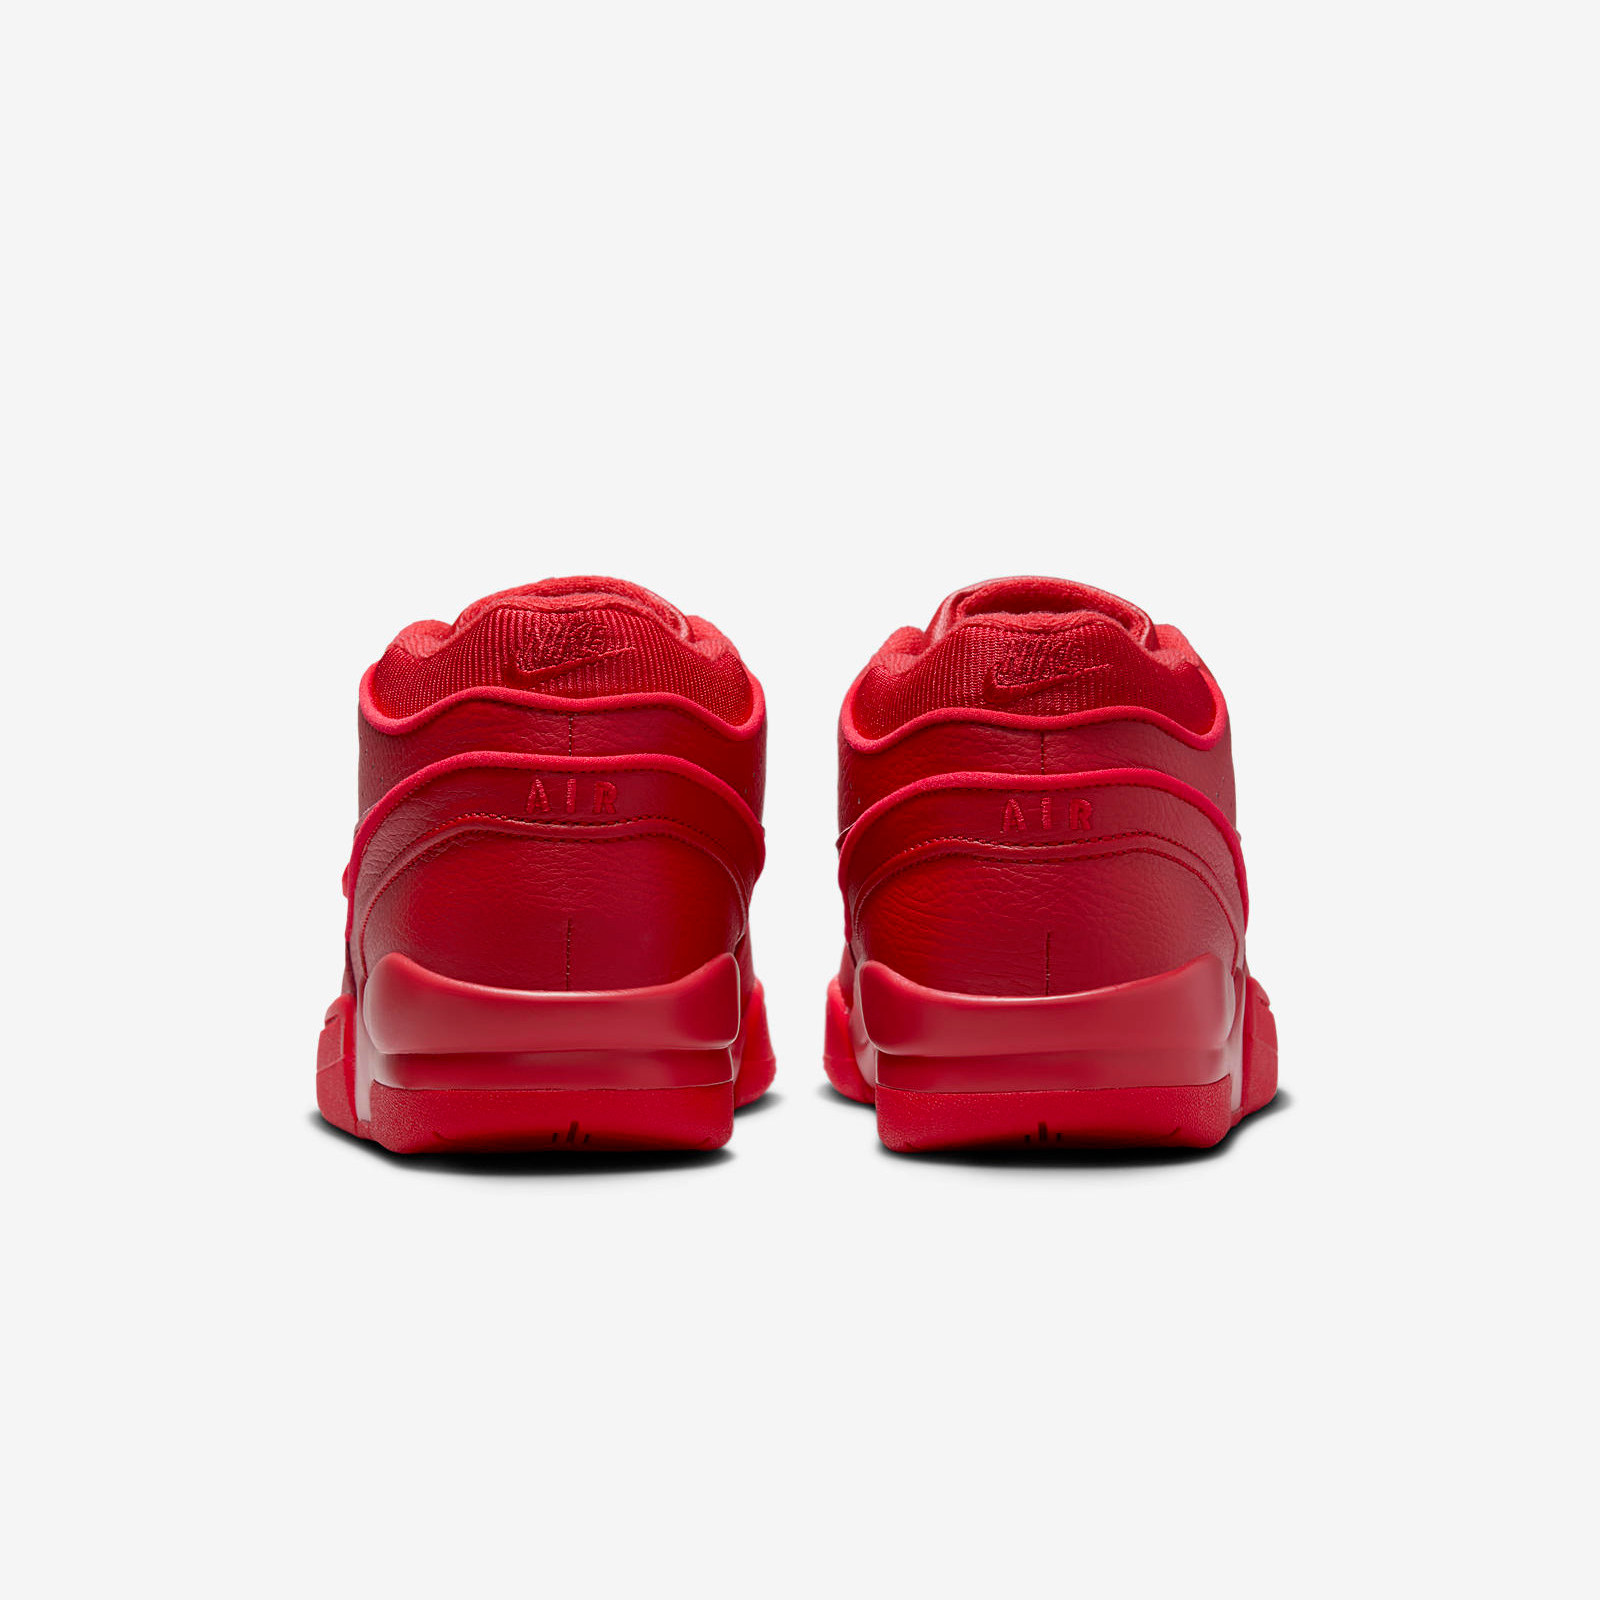 Billie x Nike AAF88
« Fire Red »